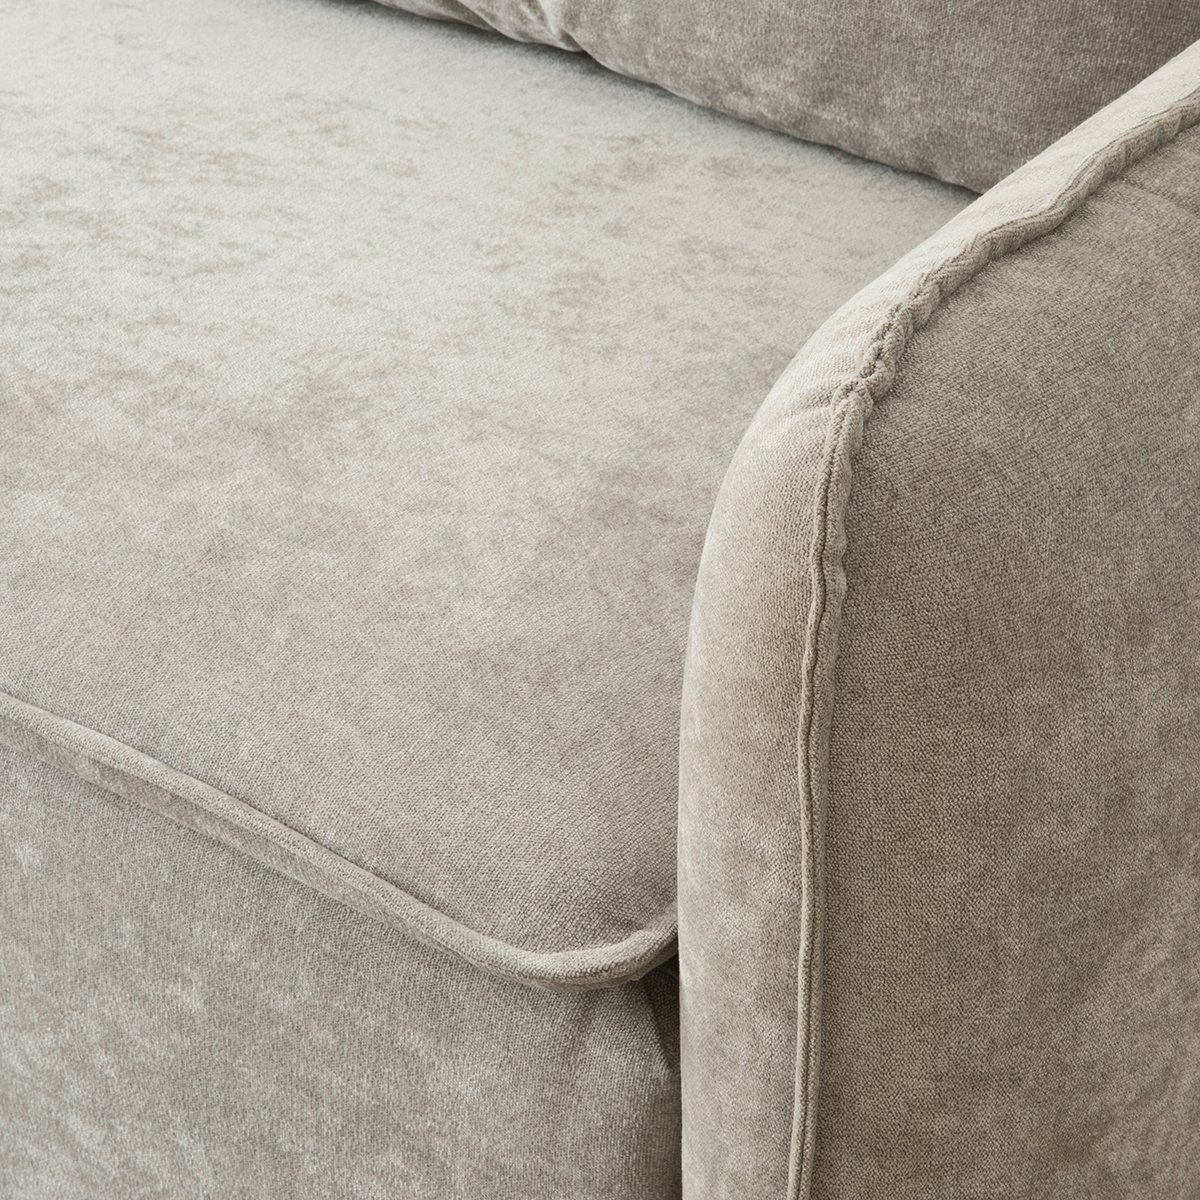 Ander sofá cama gris